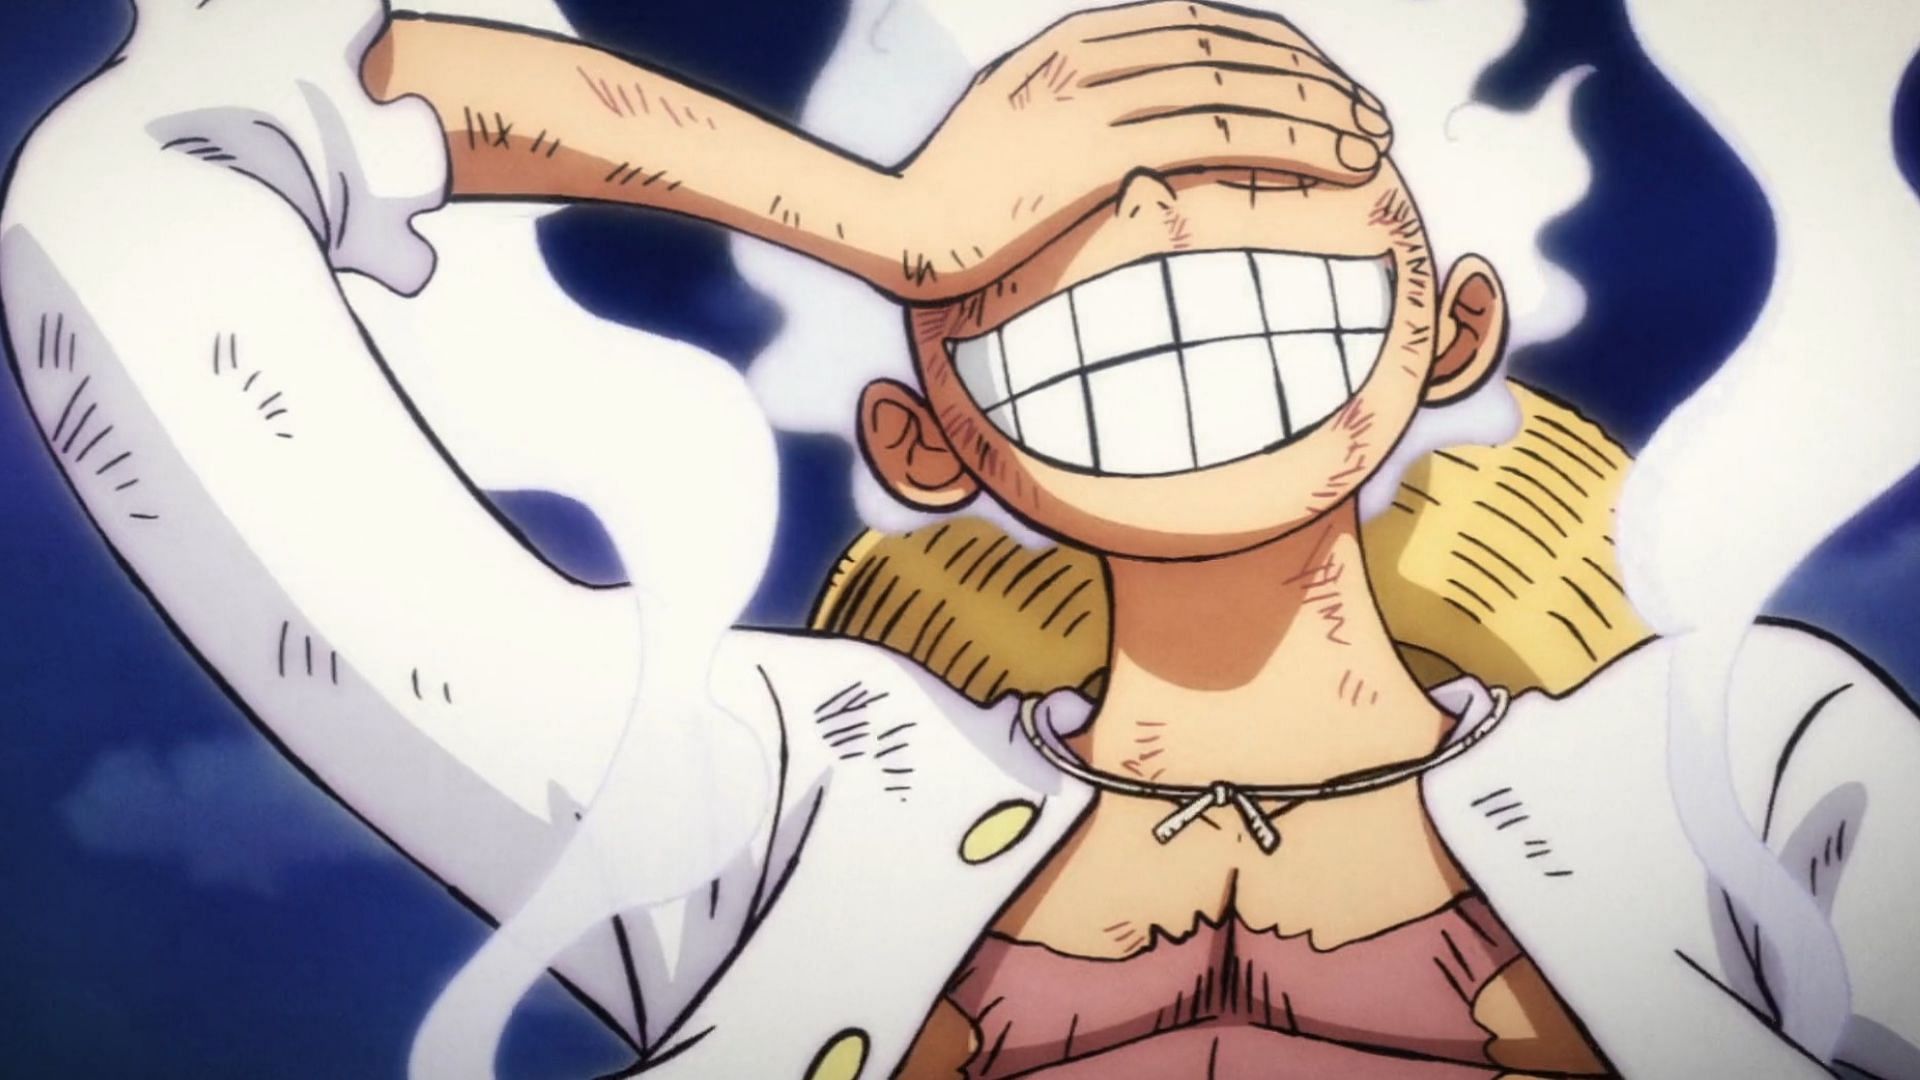 One Piece Episode 1071 - 𝕃𝕦𝕗𝕗𝕪'𝕤 ℙ𝕖𝕒𝕜 - 𝔸𝕥𝕥𝕒𝕚𝕟𝕖𝕕! 𝔾𝕖𝕒𝕣  𝟝